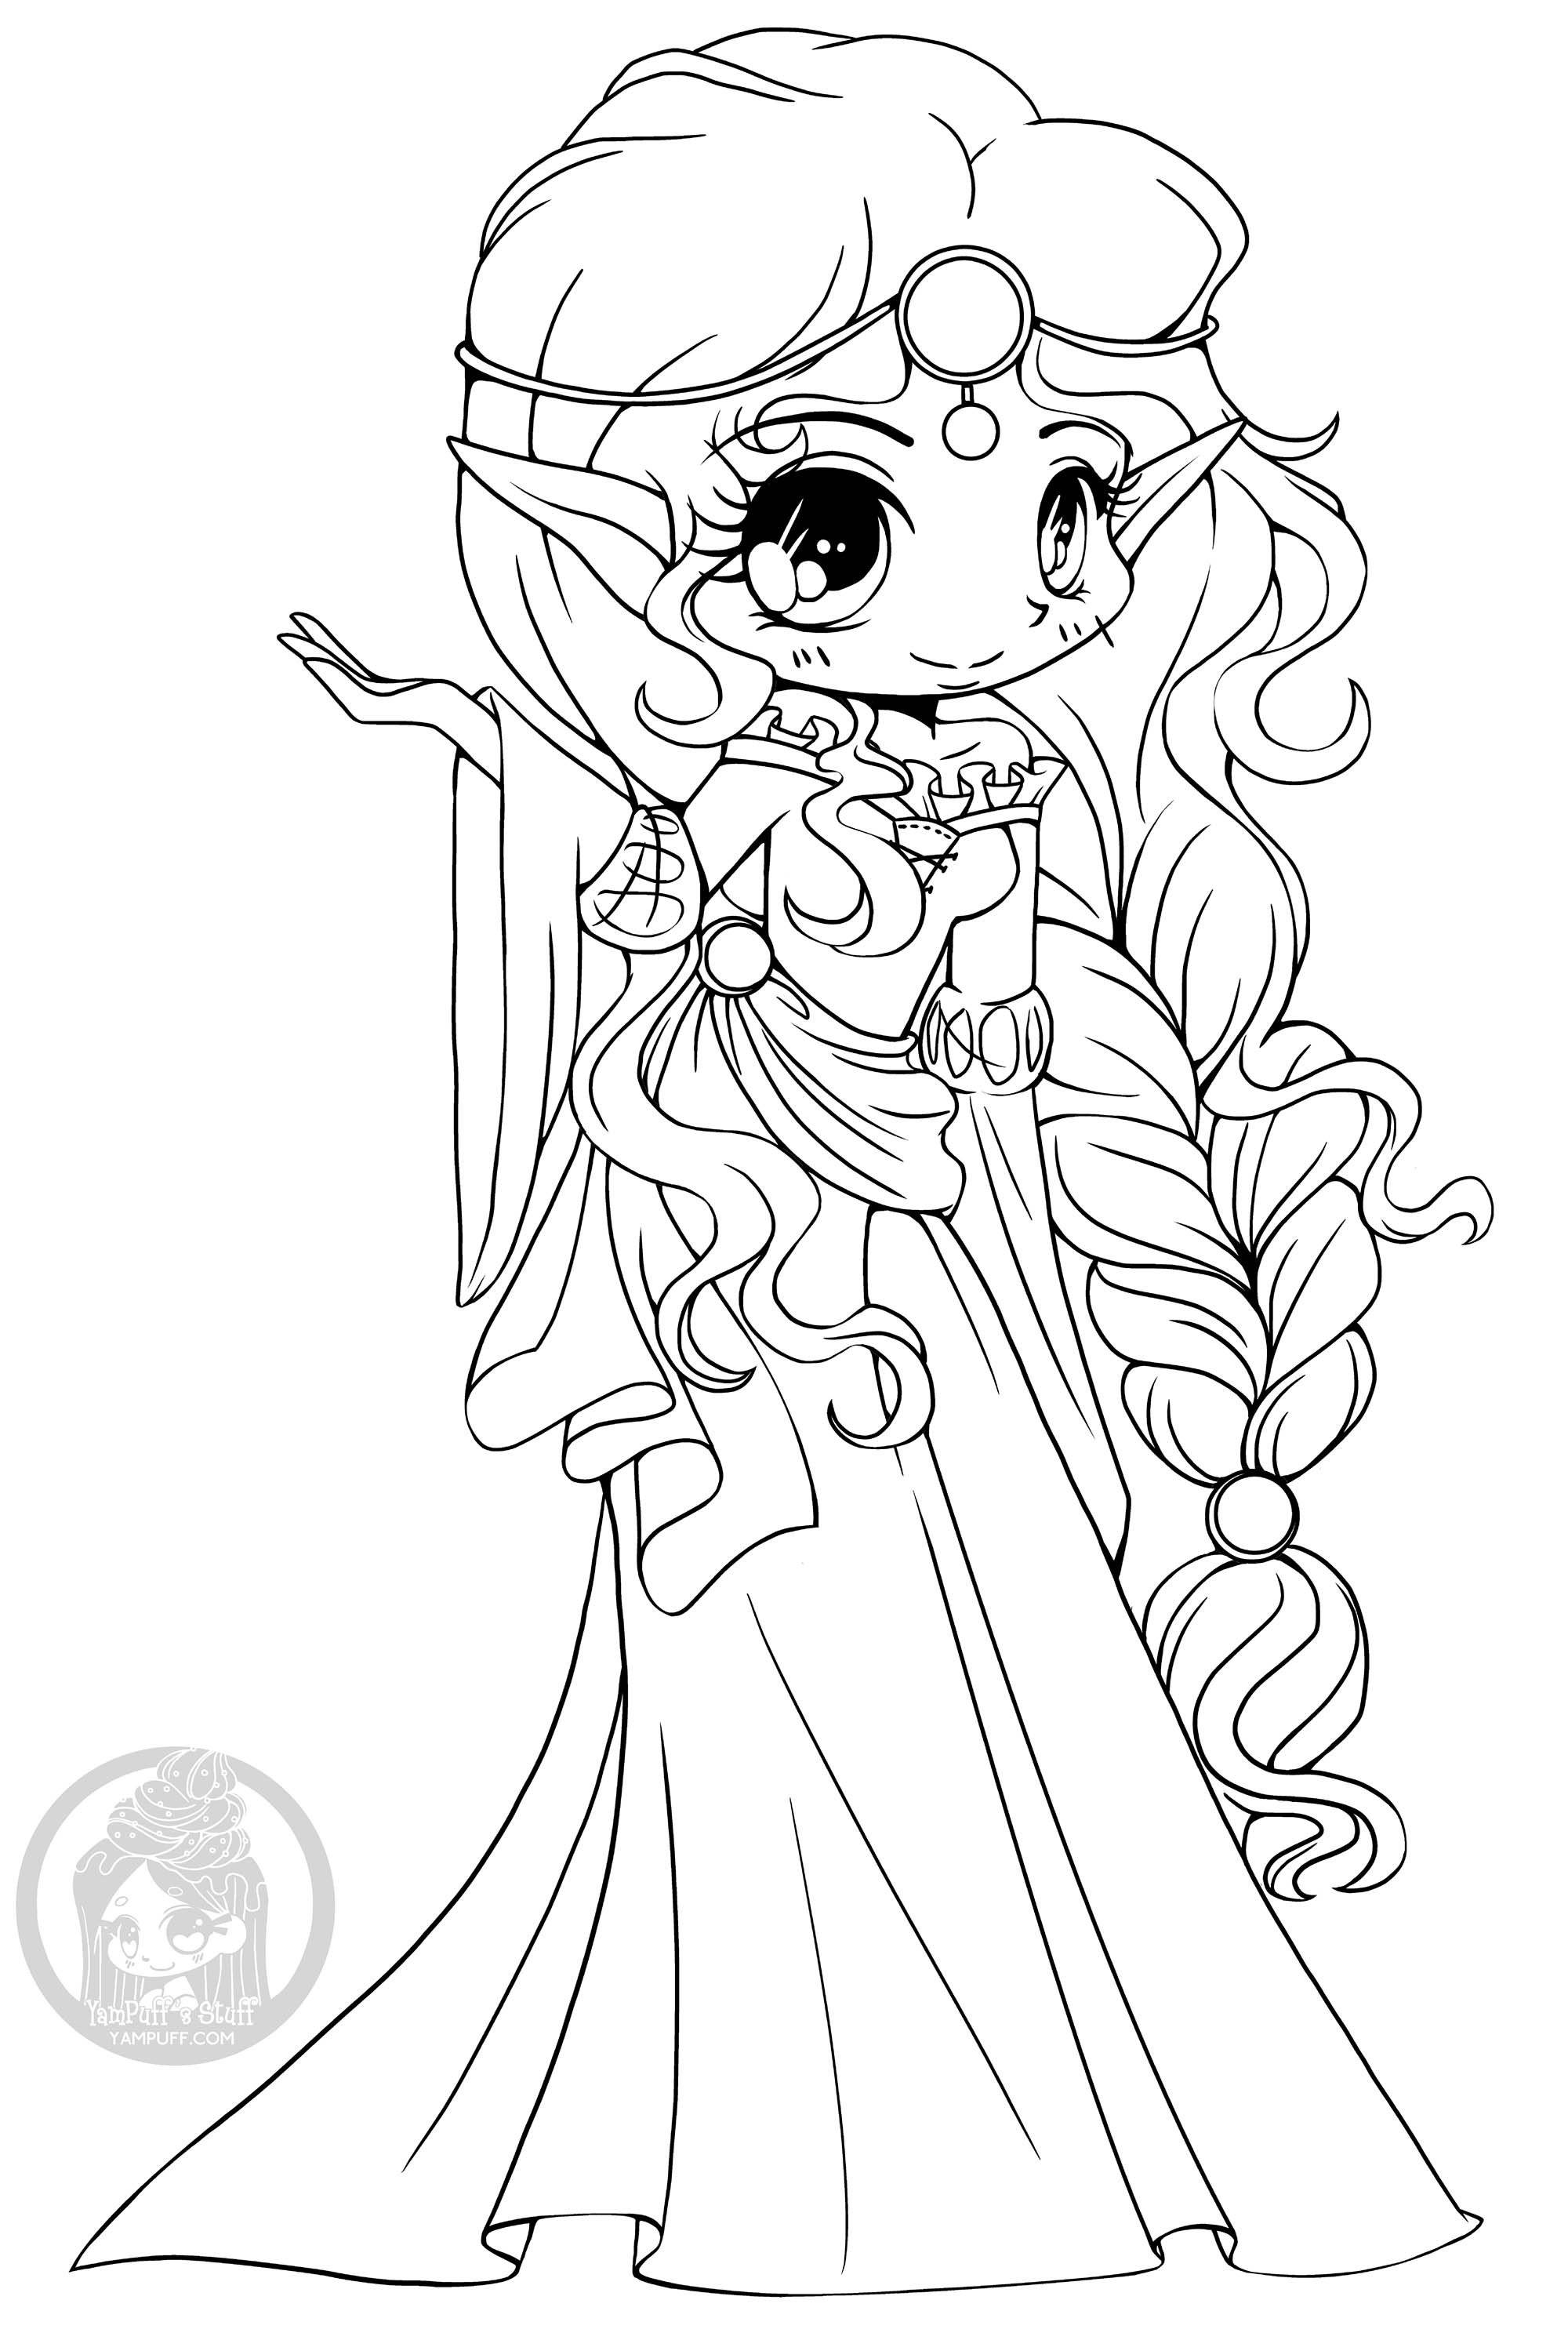 Questa principessa elfo vi mostrerà il suo regno se la colorate!, Artista : Yampuff